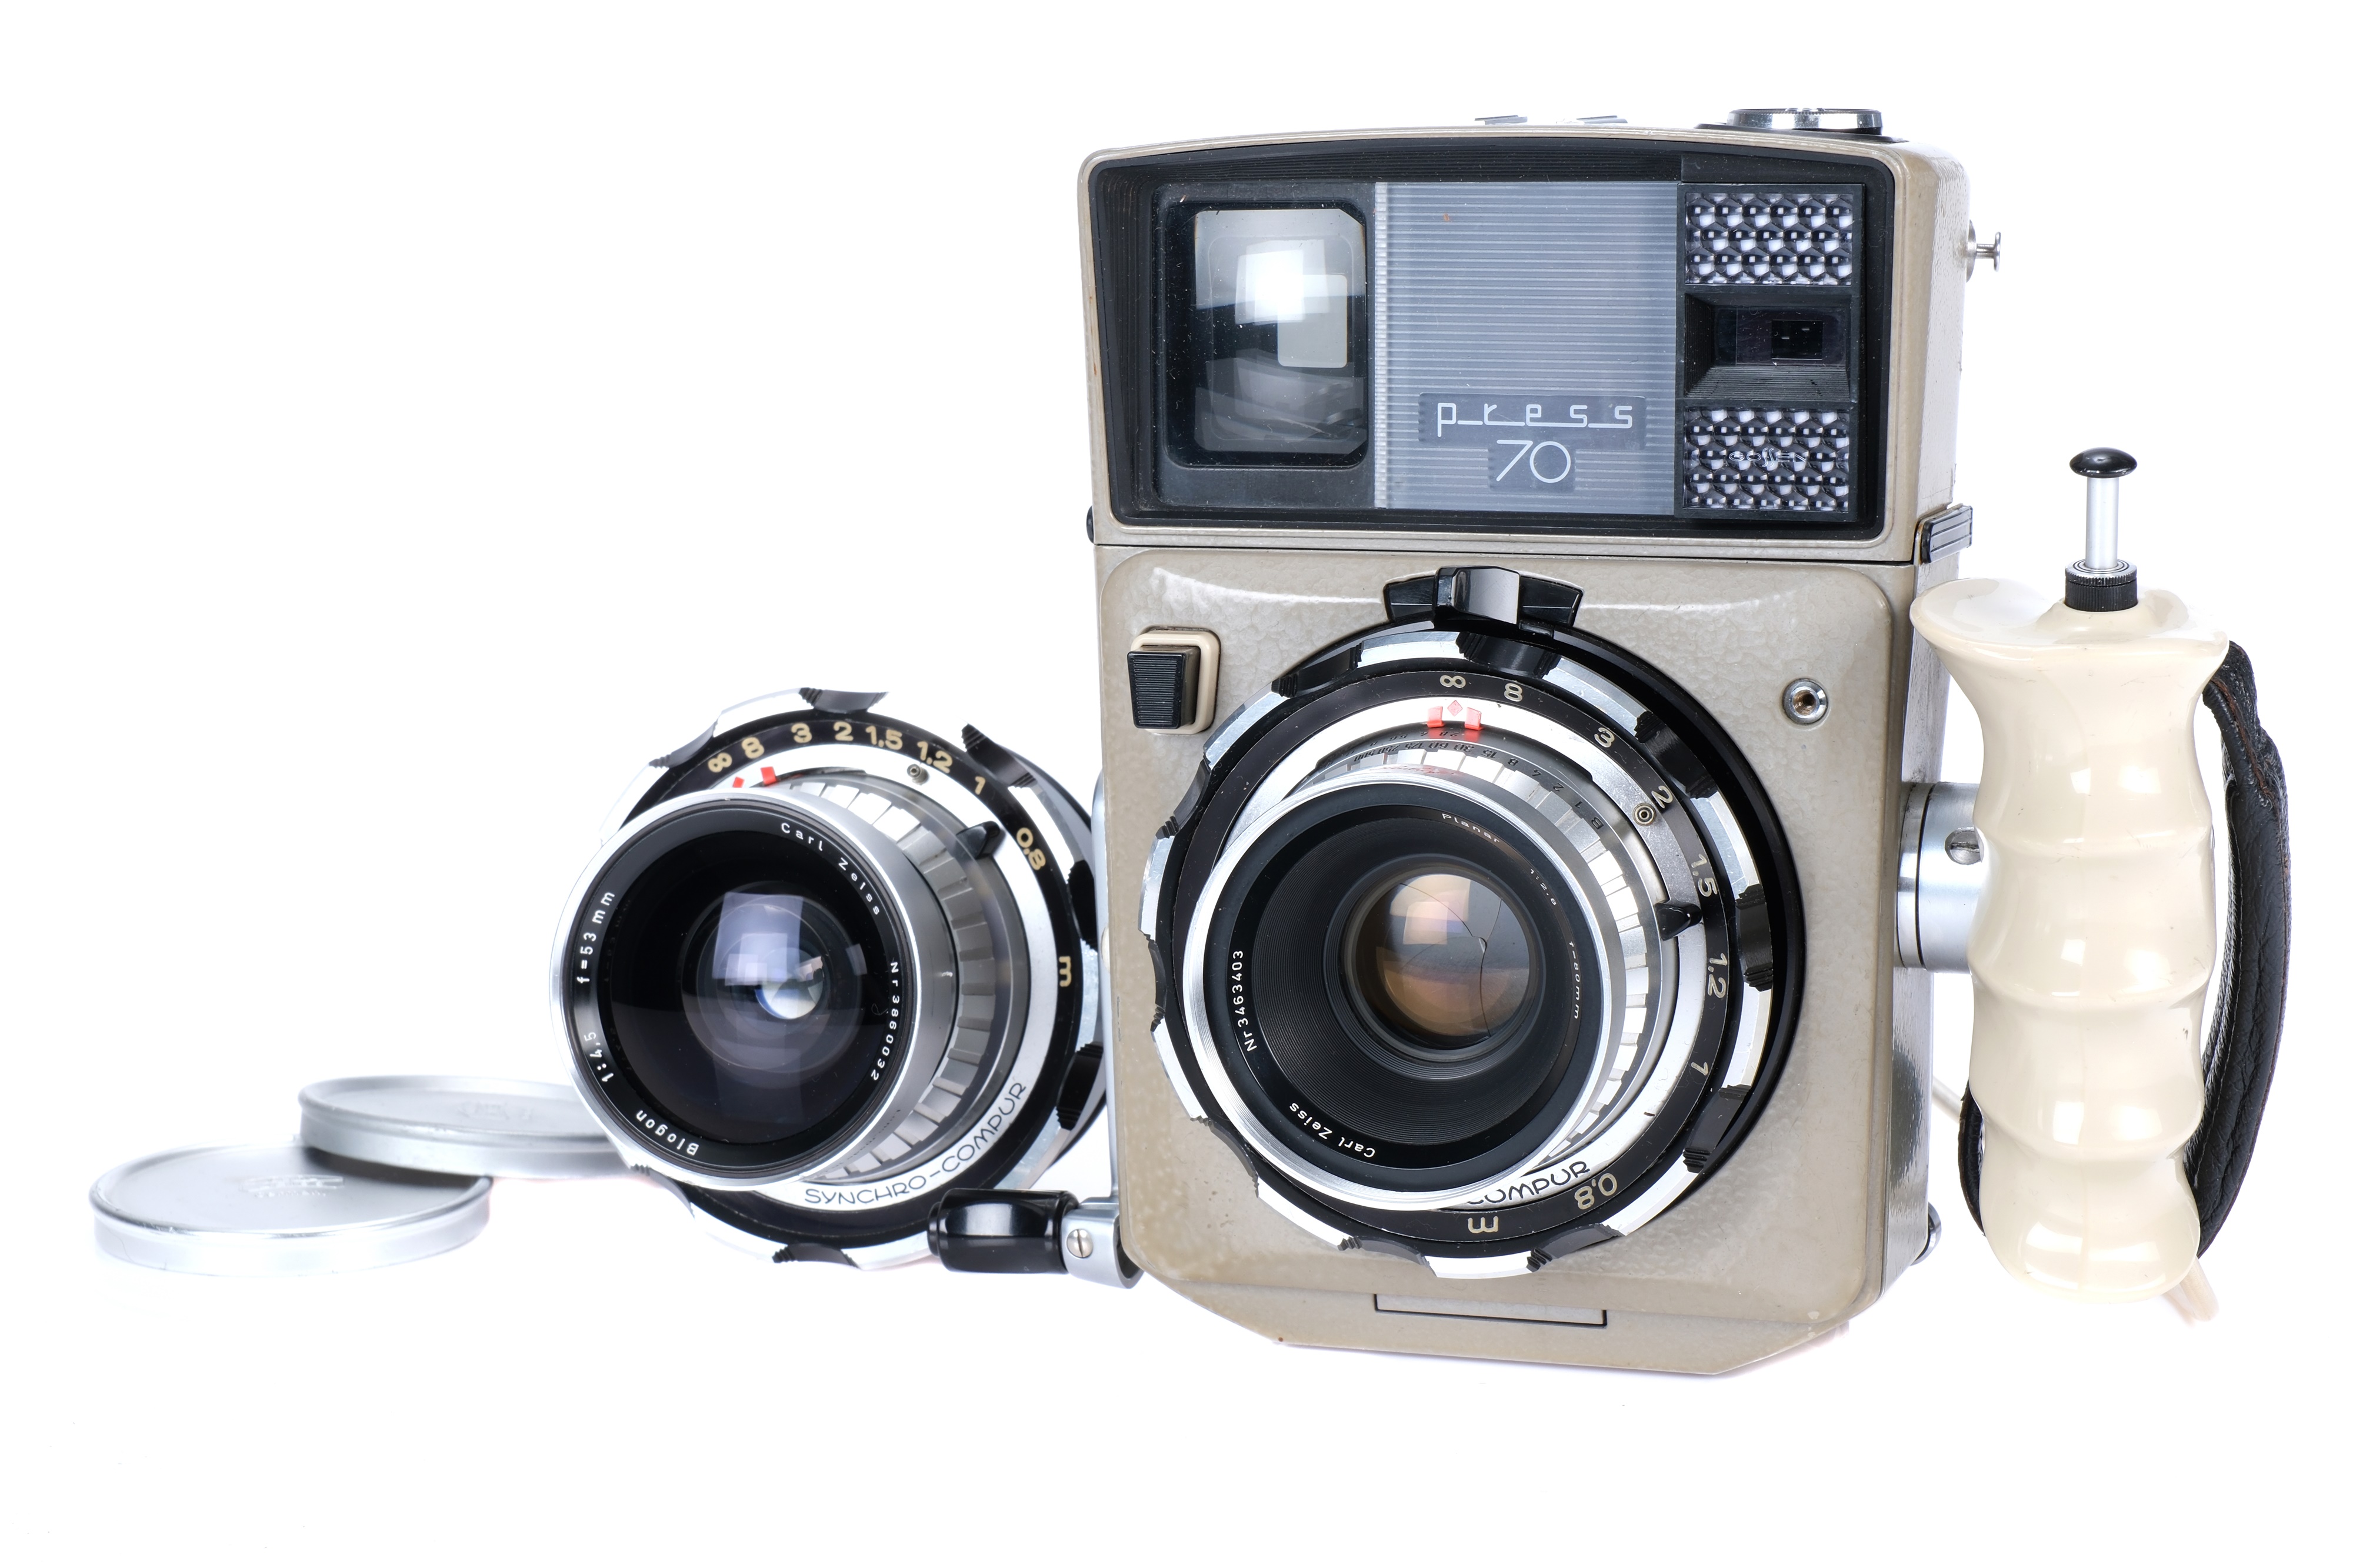 A Linhof Press 70 Medium Format Rangefinder Camera,